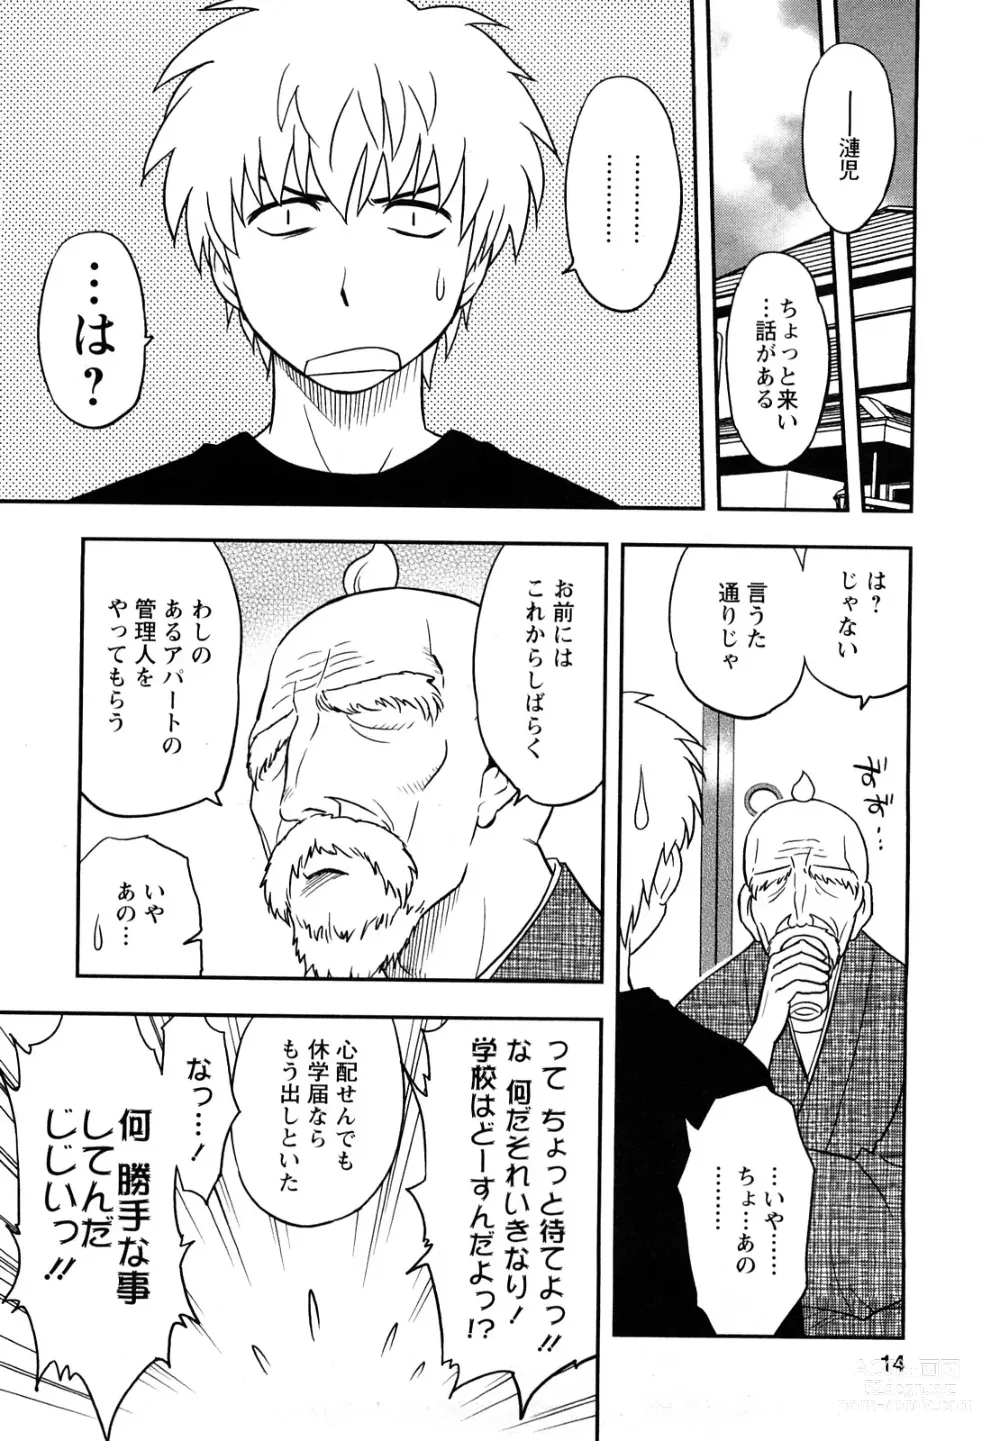 Page 14 of manga Megamisou Panic!